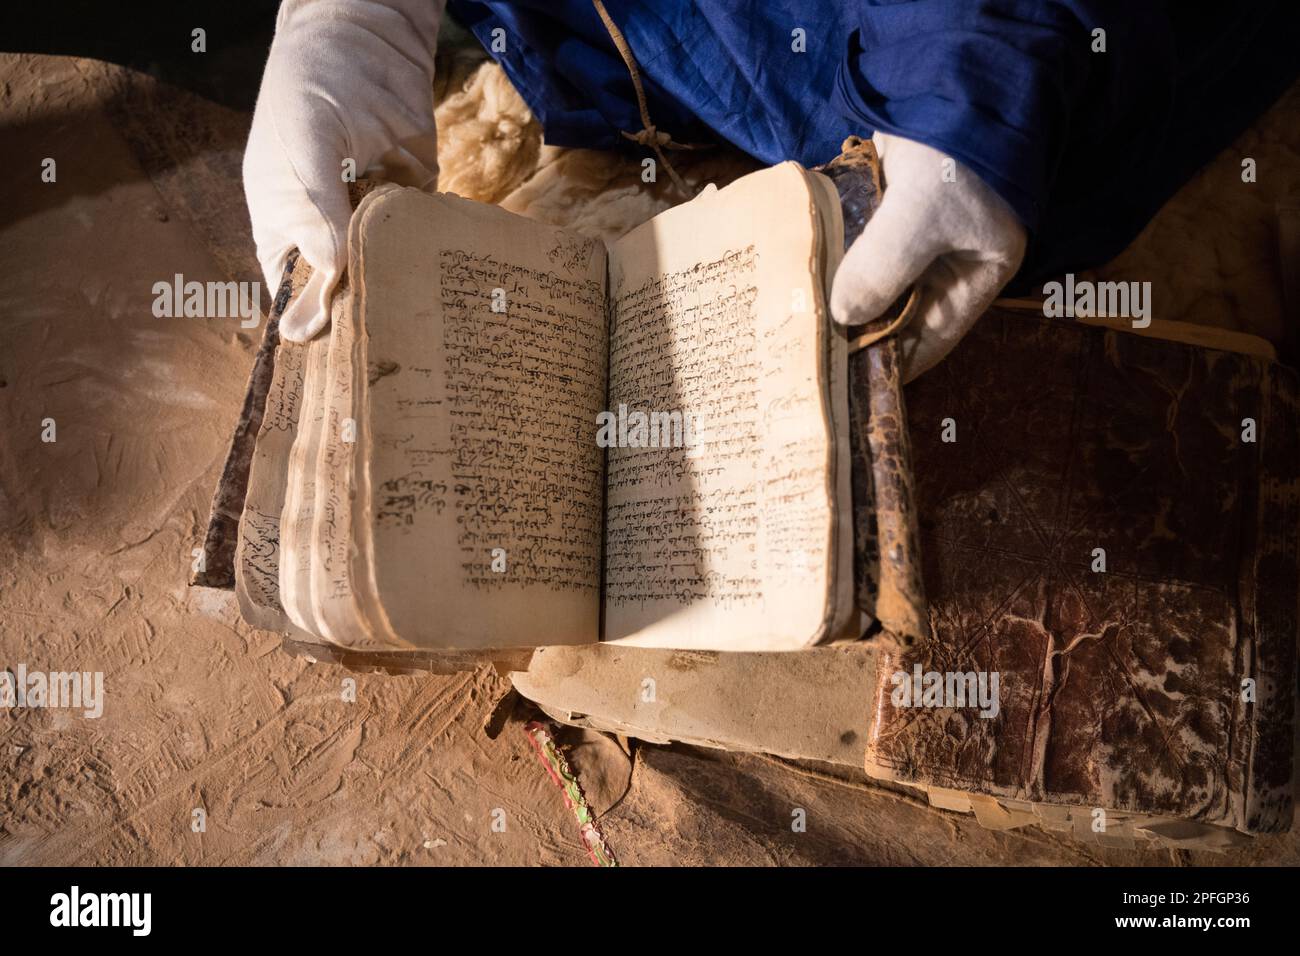 Saif Al Islam, de la bibliothèque Ahmed Mahmoud, un site du patrimoine mondial de l'UNESCO, présentant sa collection de livres anciens islamiques, Chinguetti, Adrar, Mauritanie. Banque D'Images